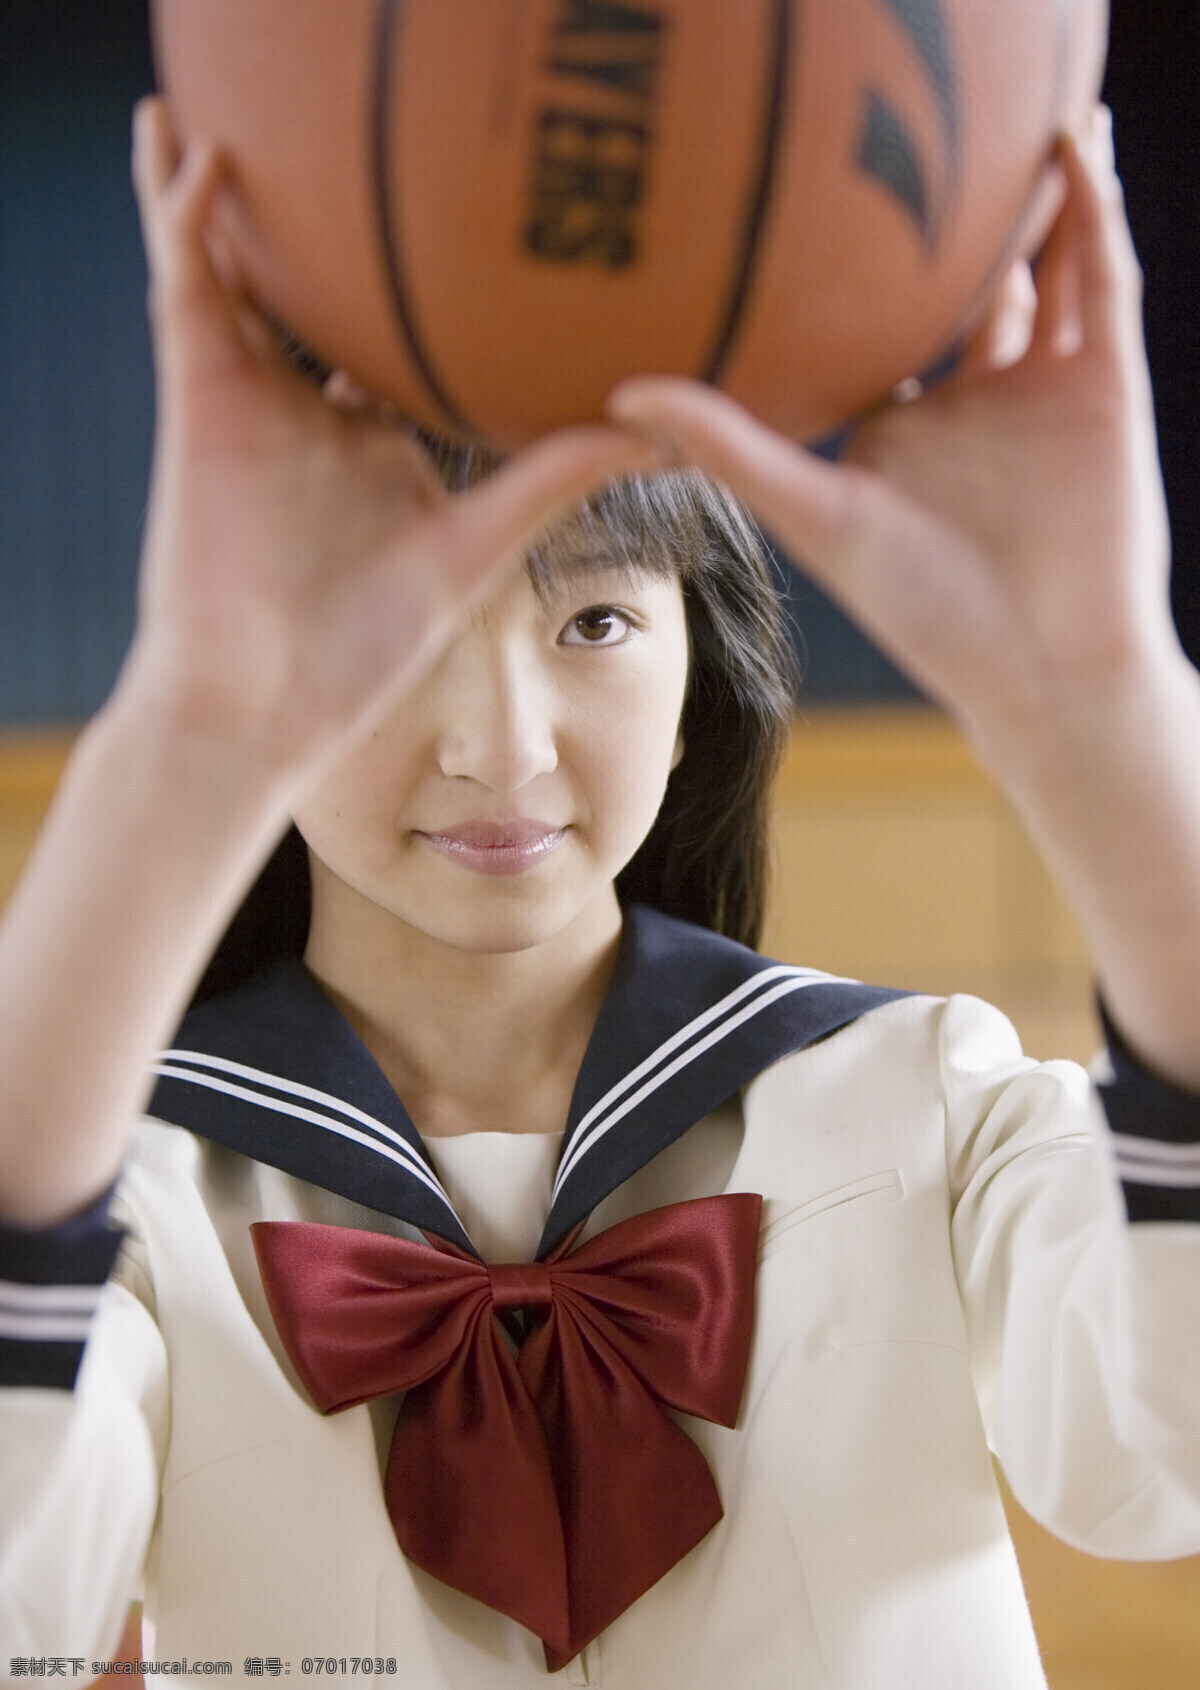 篮球 高中女生 高中生活 高中生 中学 青年 美女 女孩 女生 打篮球 青春 校服 学校 教育 校园生活 校园素材 人物素材 高清图片 生活人物 人物图片